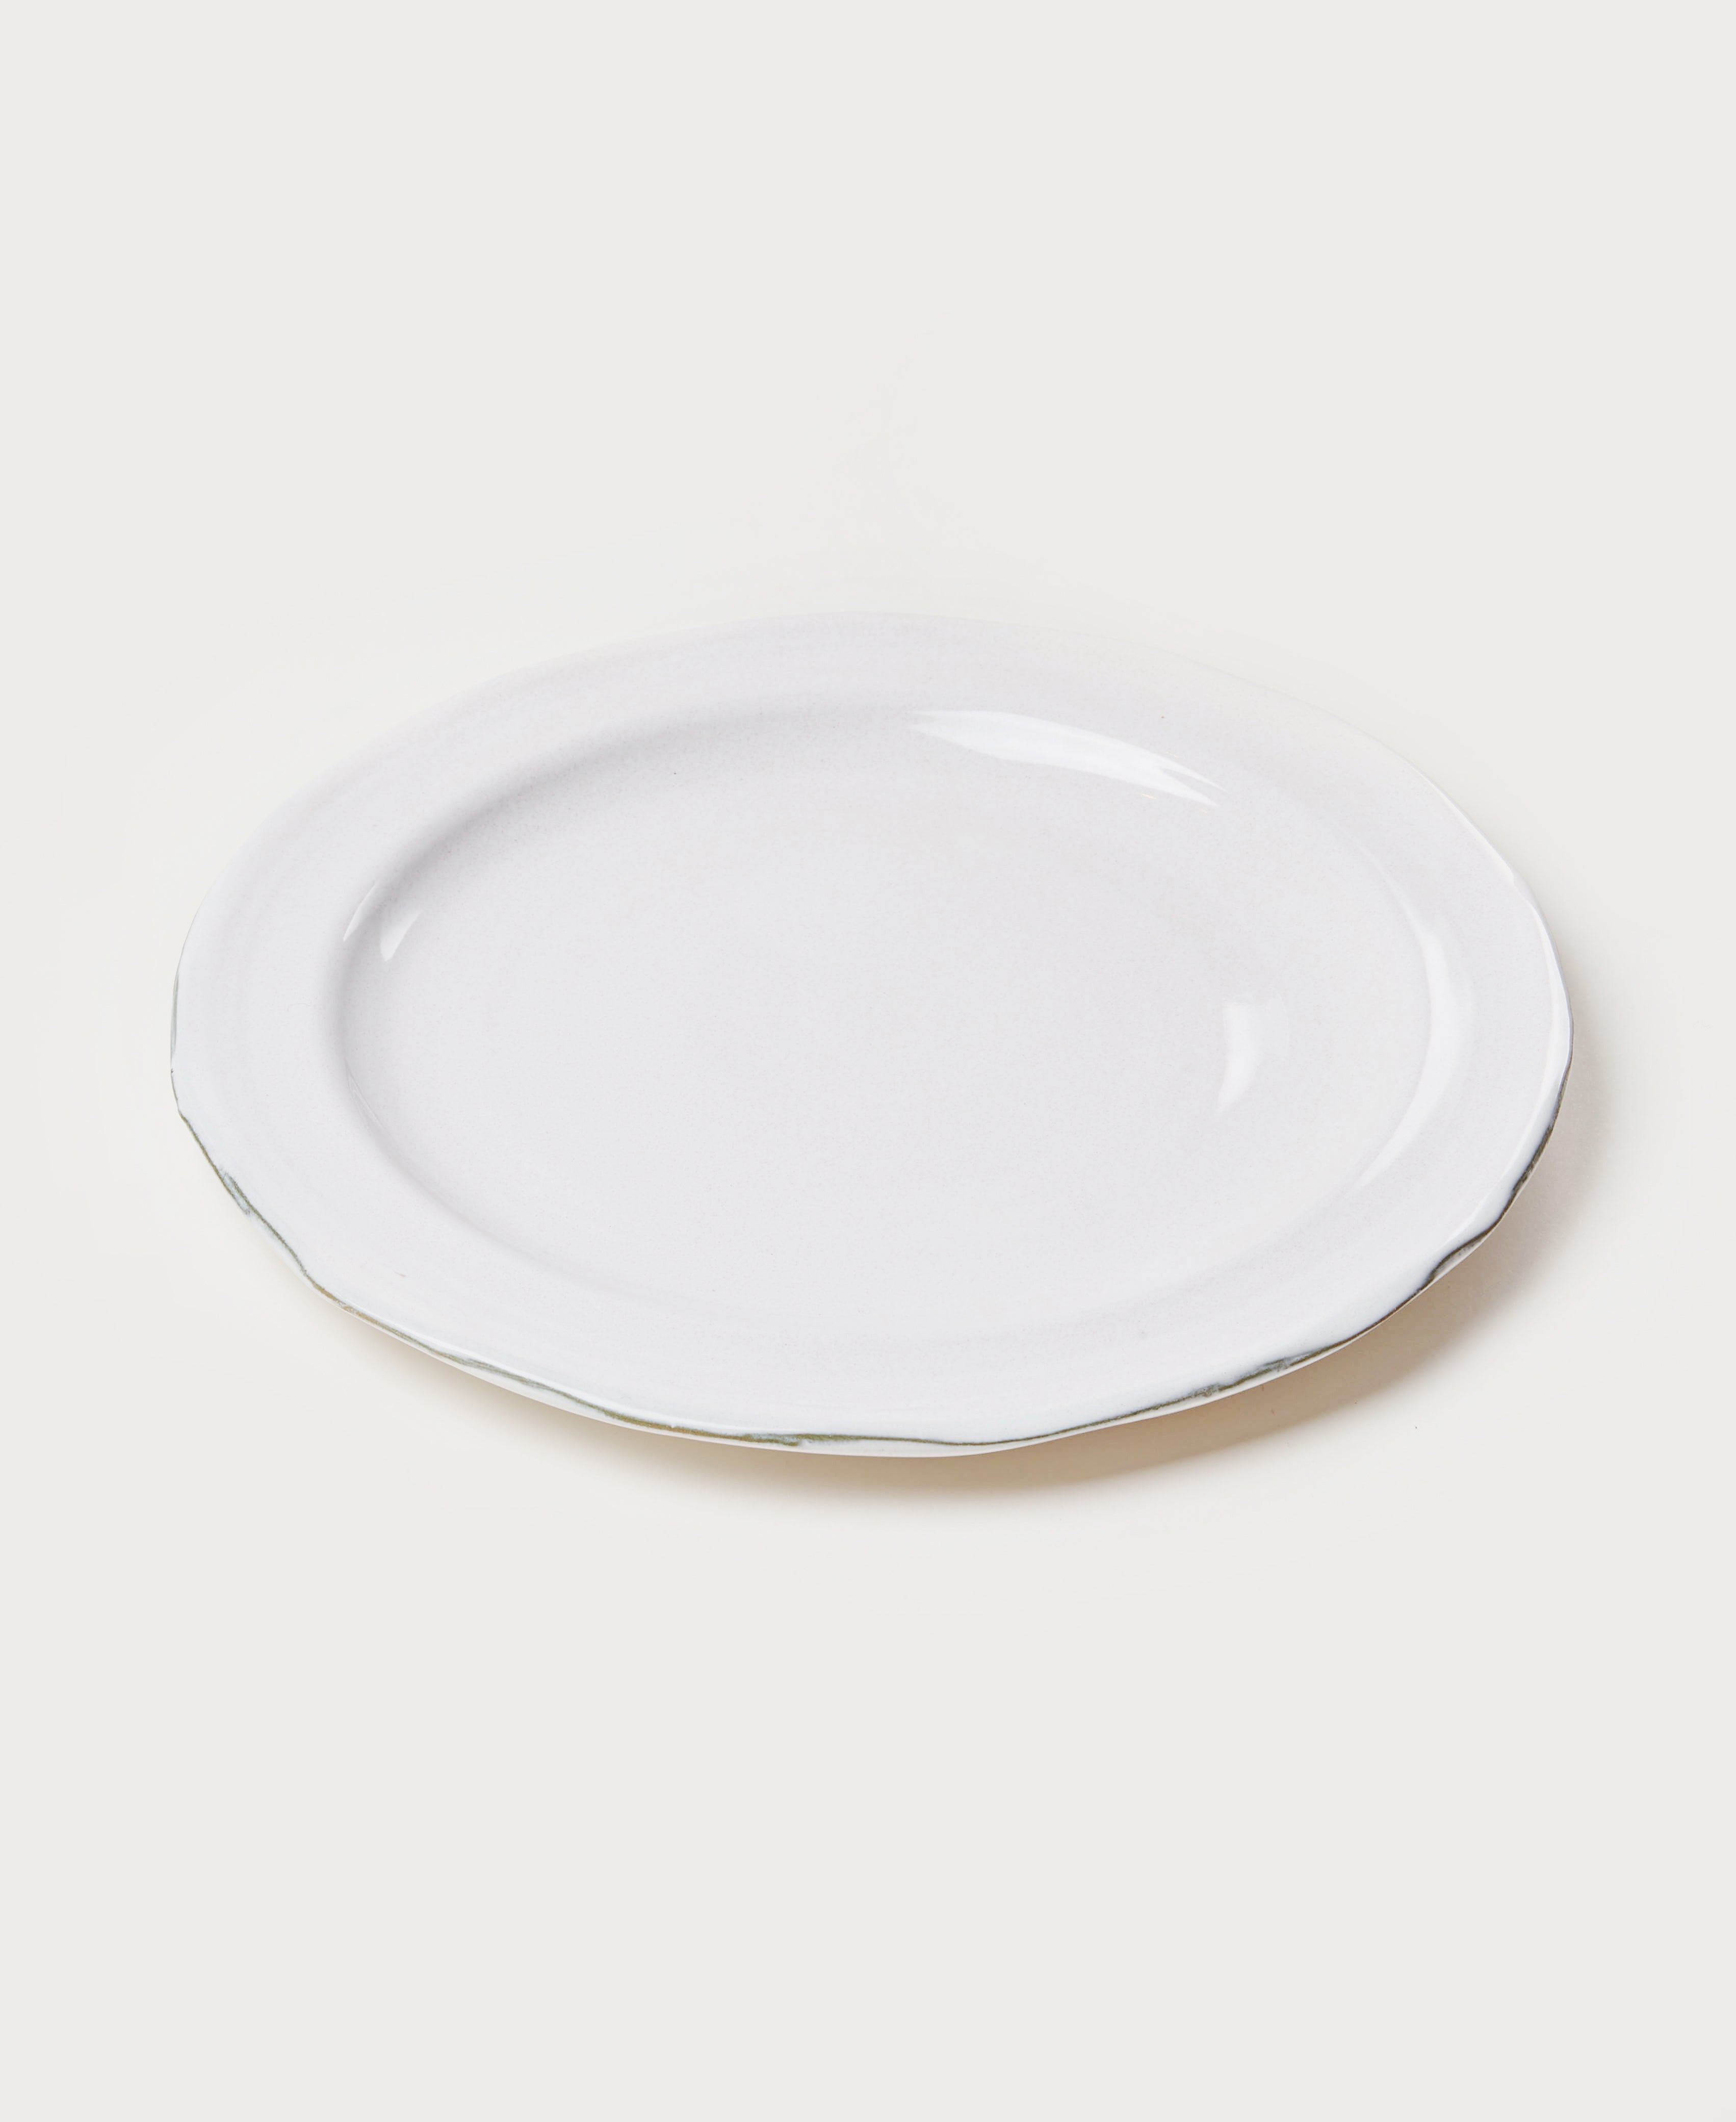   Dinner Plate  